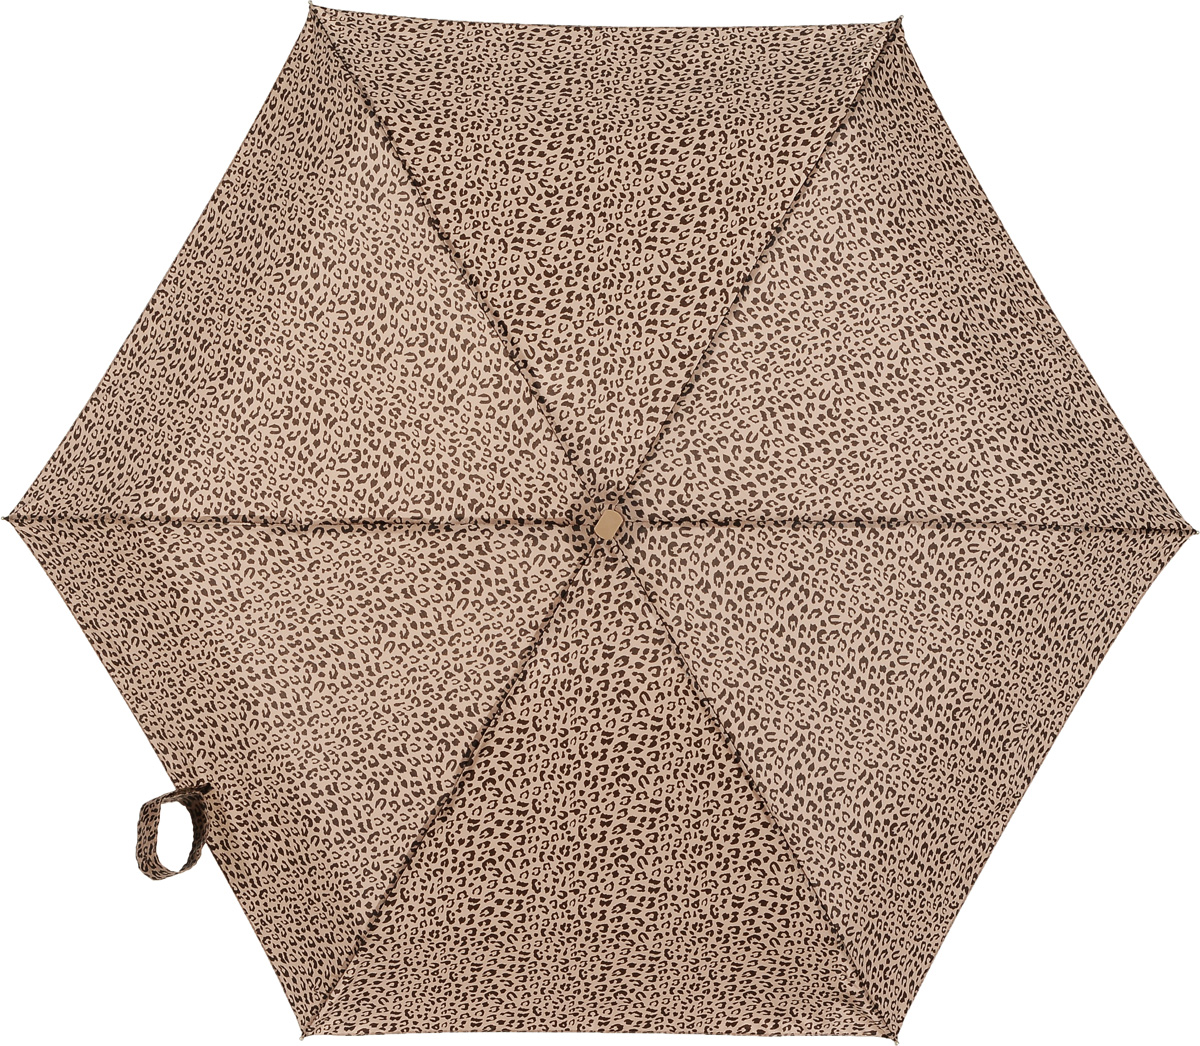 Зонт женский Fulton, механический, 5 сложений, цвет: бежевый, коричневый. L501-2746